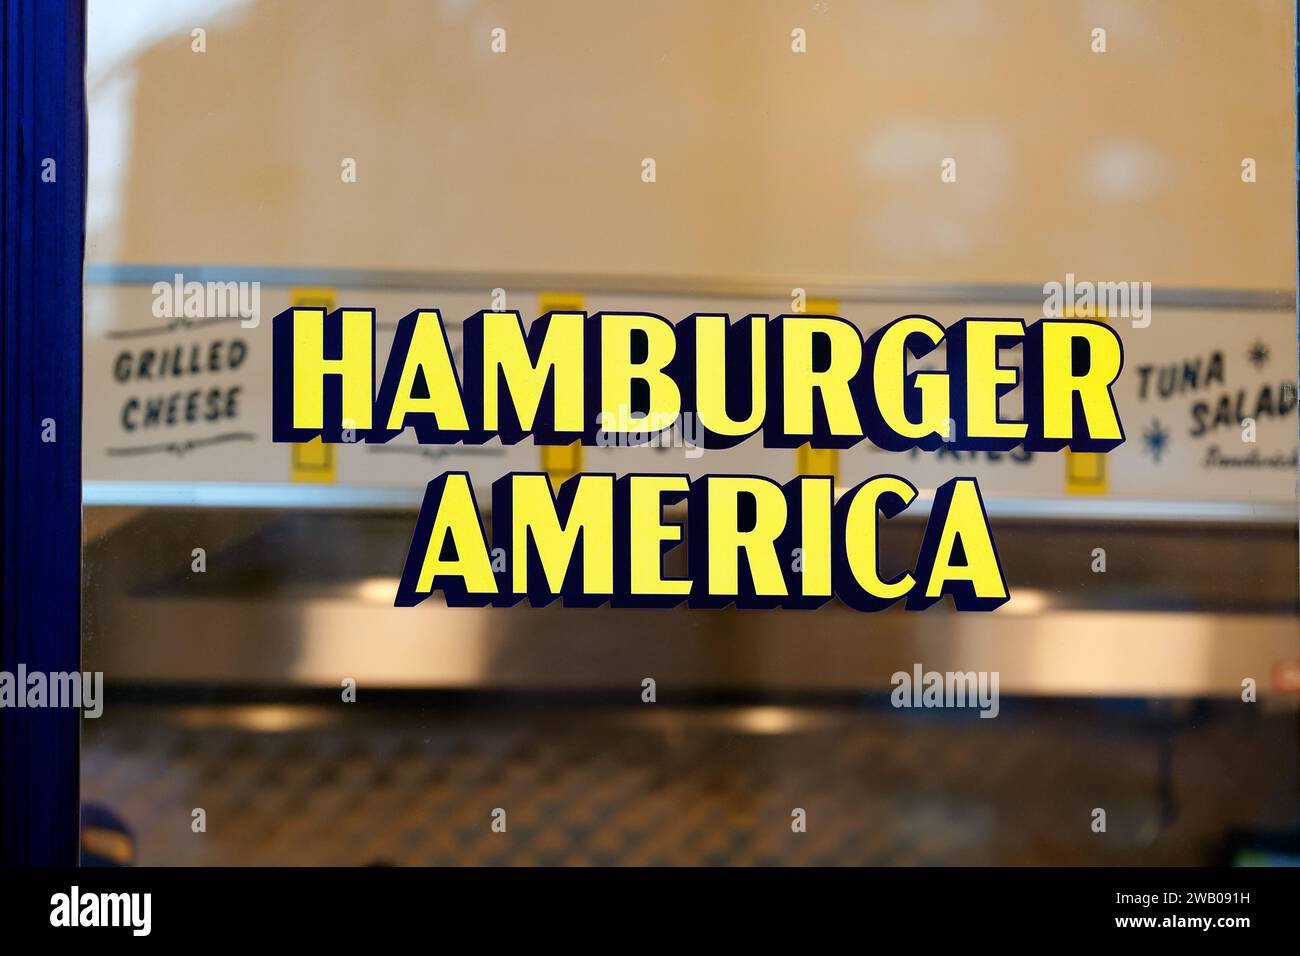 Signalisation pour Hamburger America, un restaurant smash Burger au 51 MacDougal St, 155 W Houston St, New York. Banque D'Images